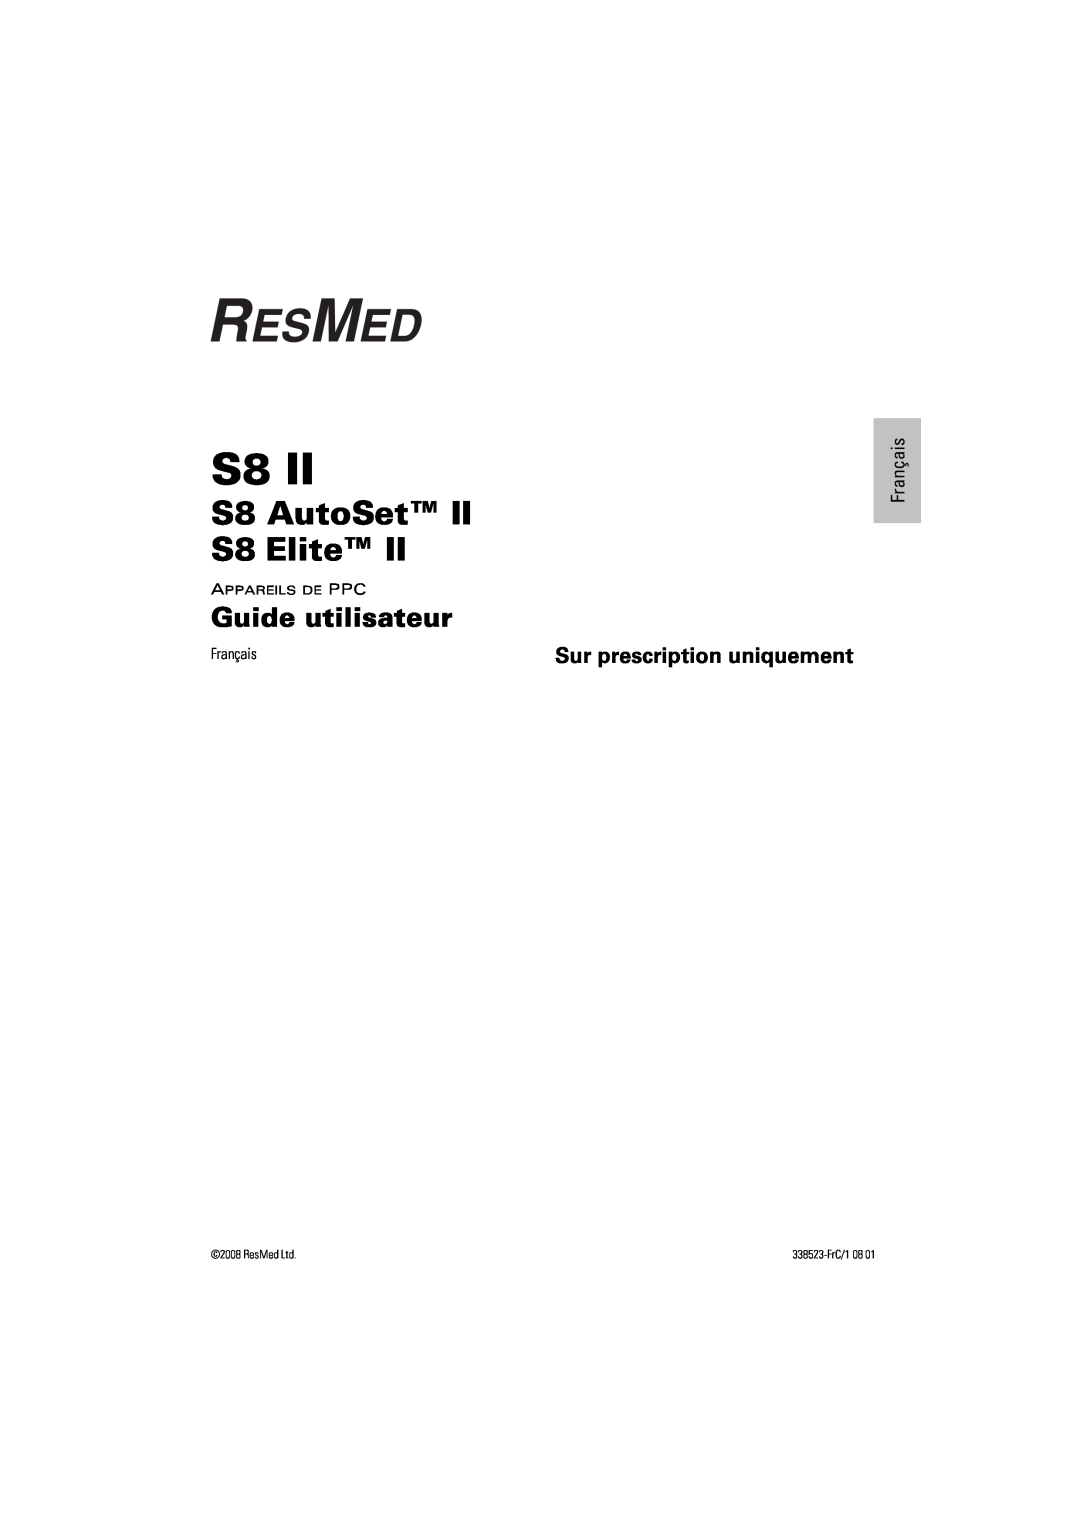 ResMed s8 manual Guide utilisateur, Sur prescription uniquement, Français, S8 AutoSet S8 Elite, 338523-FrC/108 